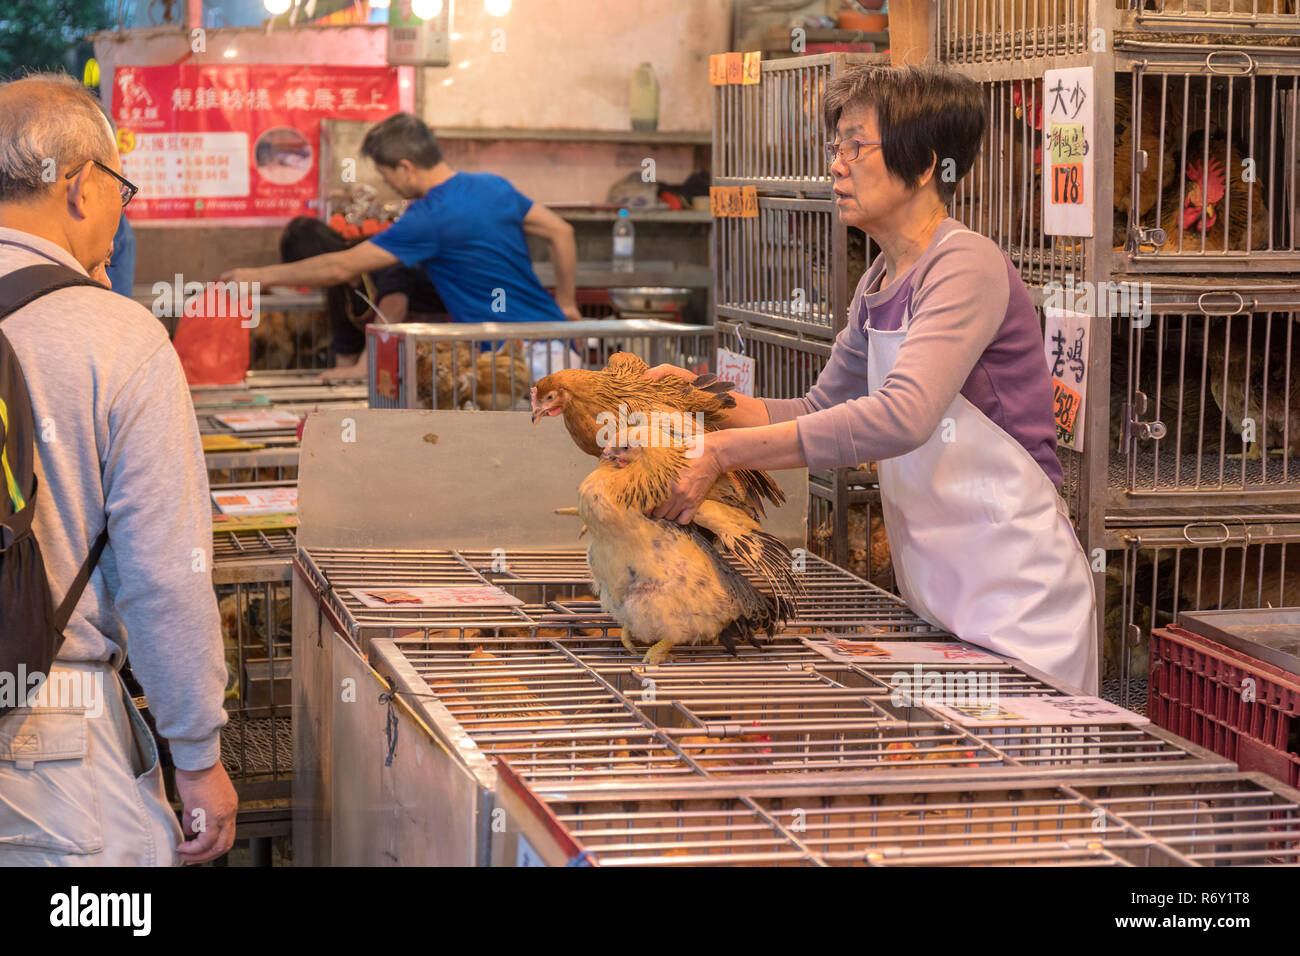 KOWLOON, HONG KONG - APRIL 22, 2017: Live Chicken Seller at Poultry Shop at Local Market in Kowloon, Hong Kong. Stock Photo